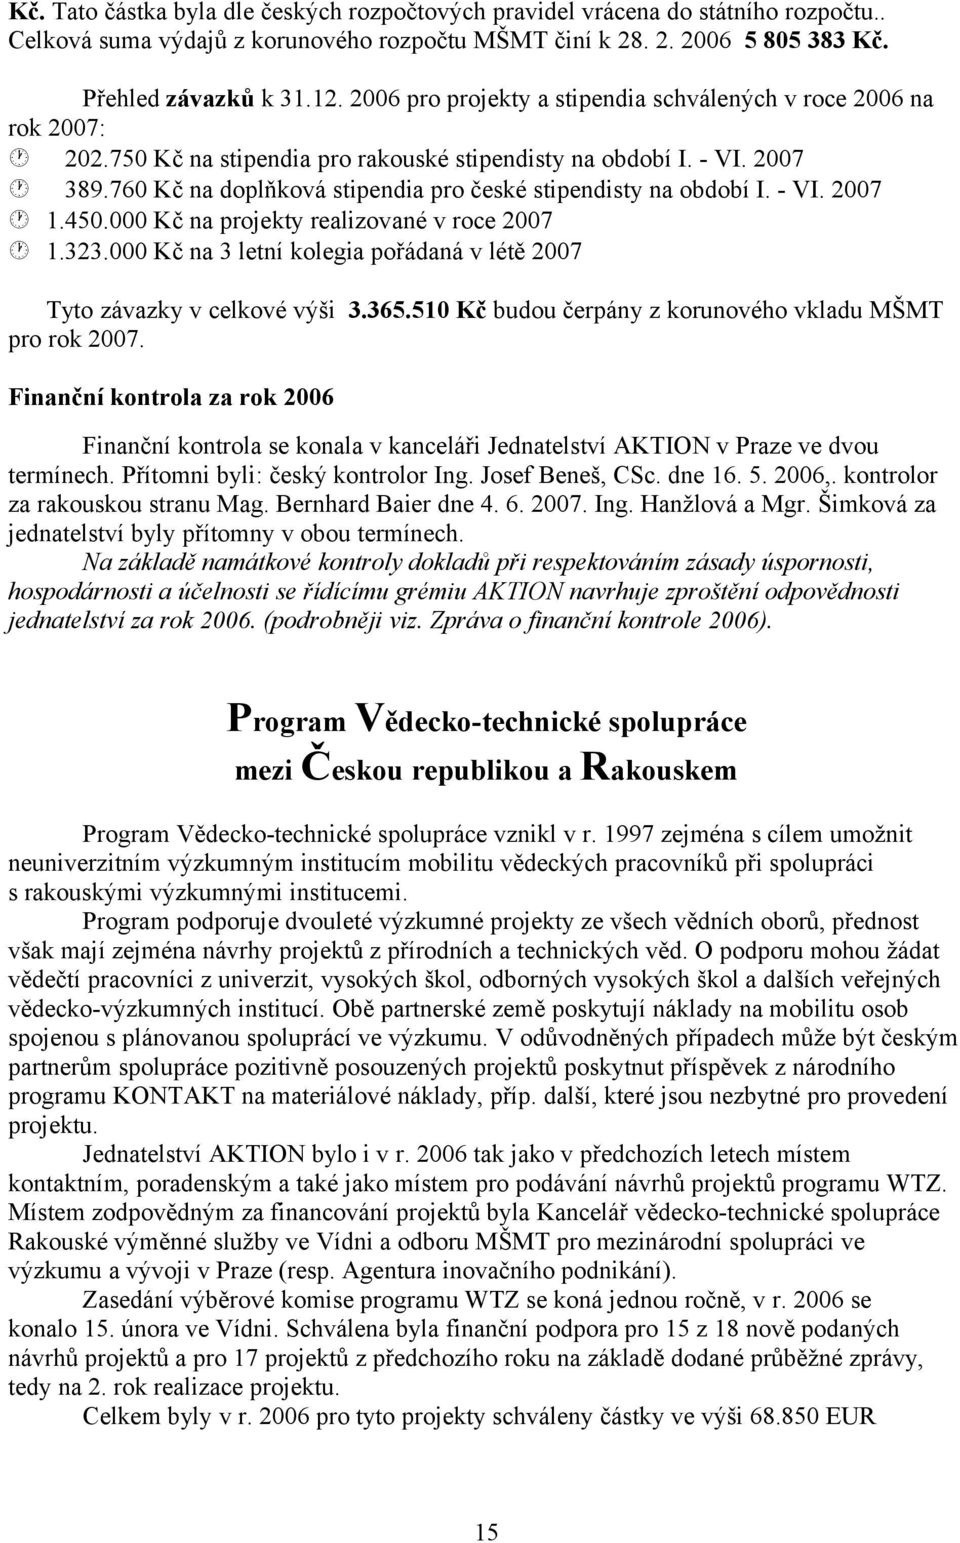 760 Kč na doplňková stipendia pro české stipendisty na období I. - VI. 2007 1.450.000 Kč na projekty realizované v roce 2007 1.323.